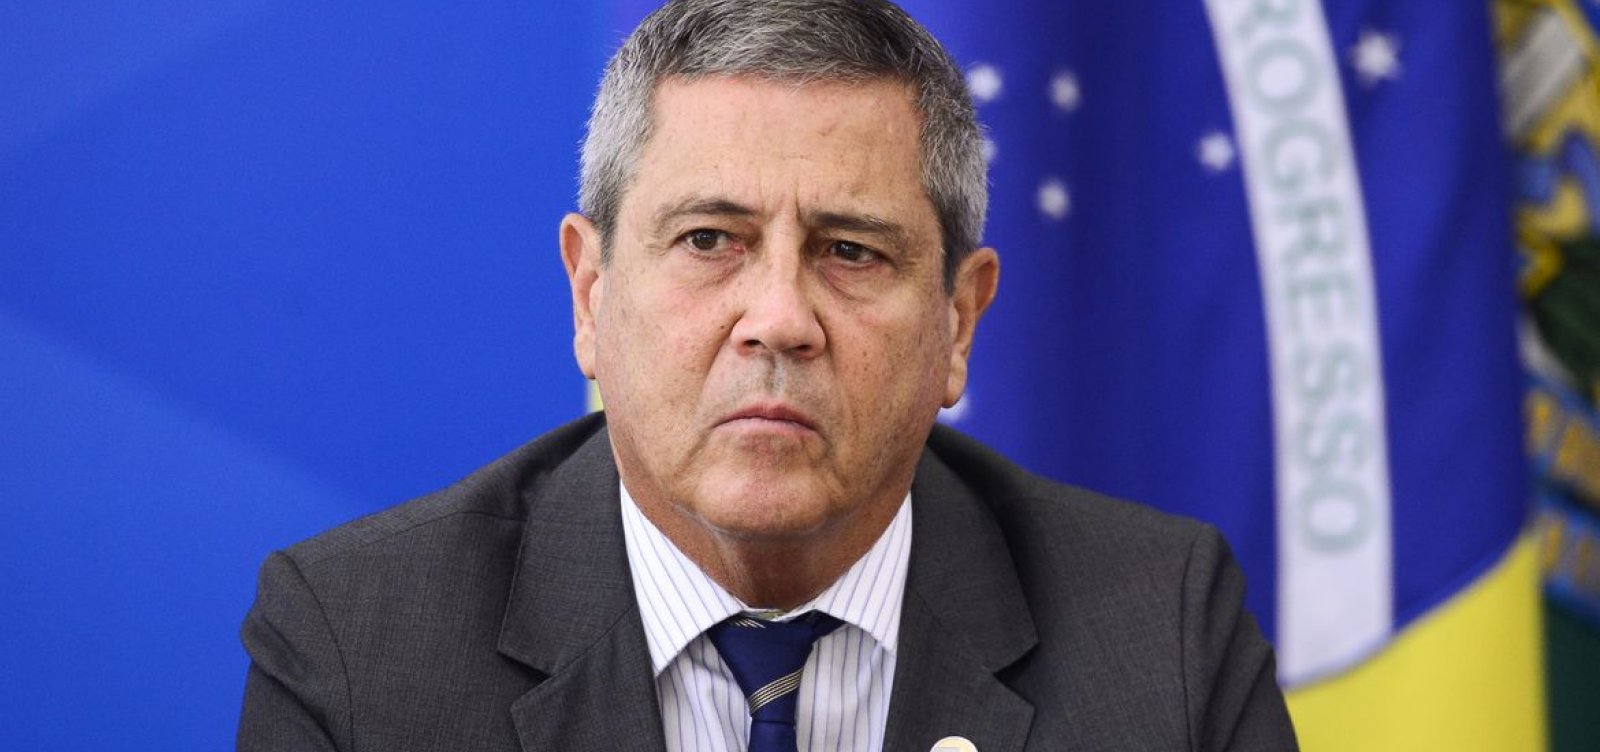 Candidato a vice de Bolsonaro, Braga Netto recebeu supersalário de quase R$ 1 milhão na pandemia